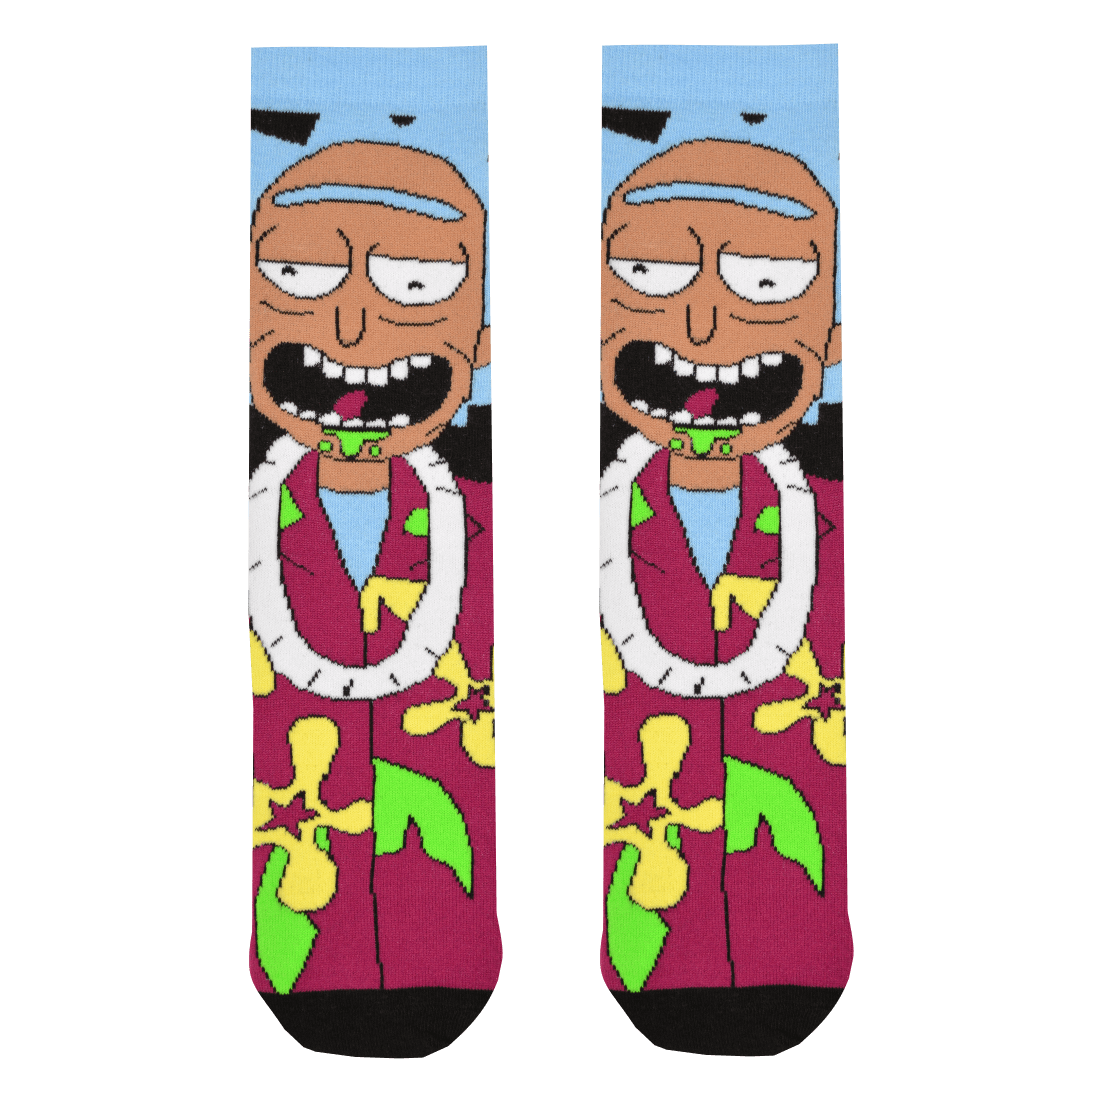 Medias Locas calcetines divertidos de diseño de Rick and Morty Freaky Socks. Medias Rick and Morty